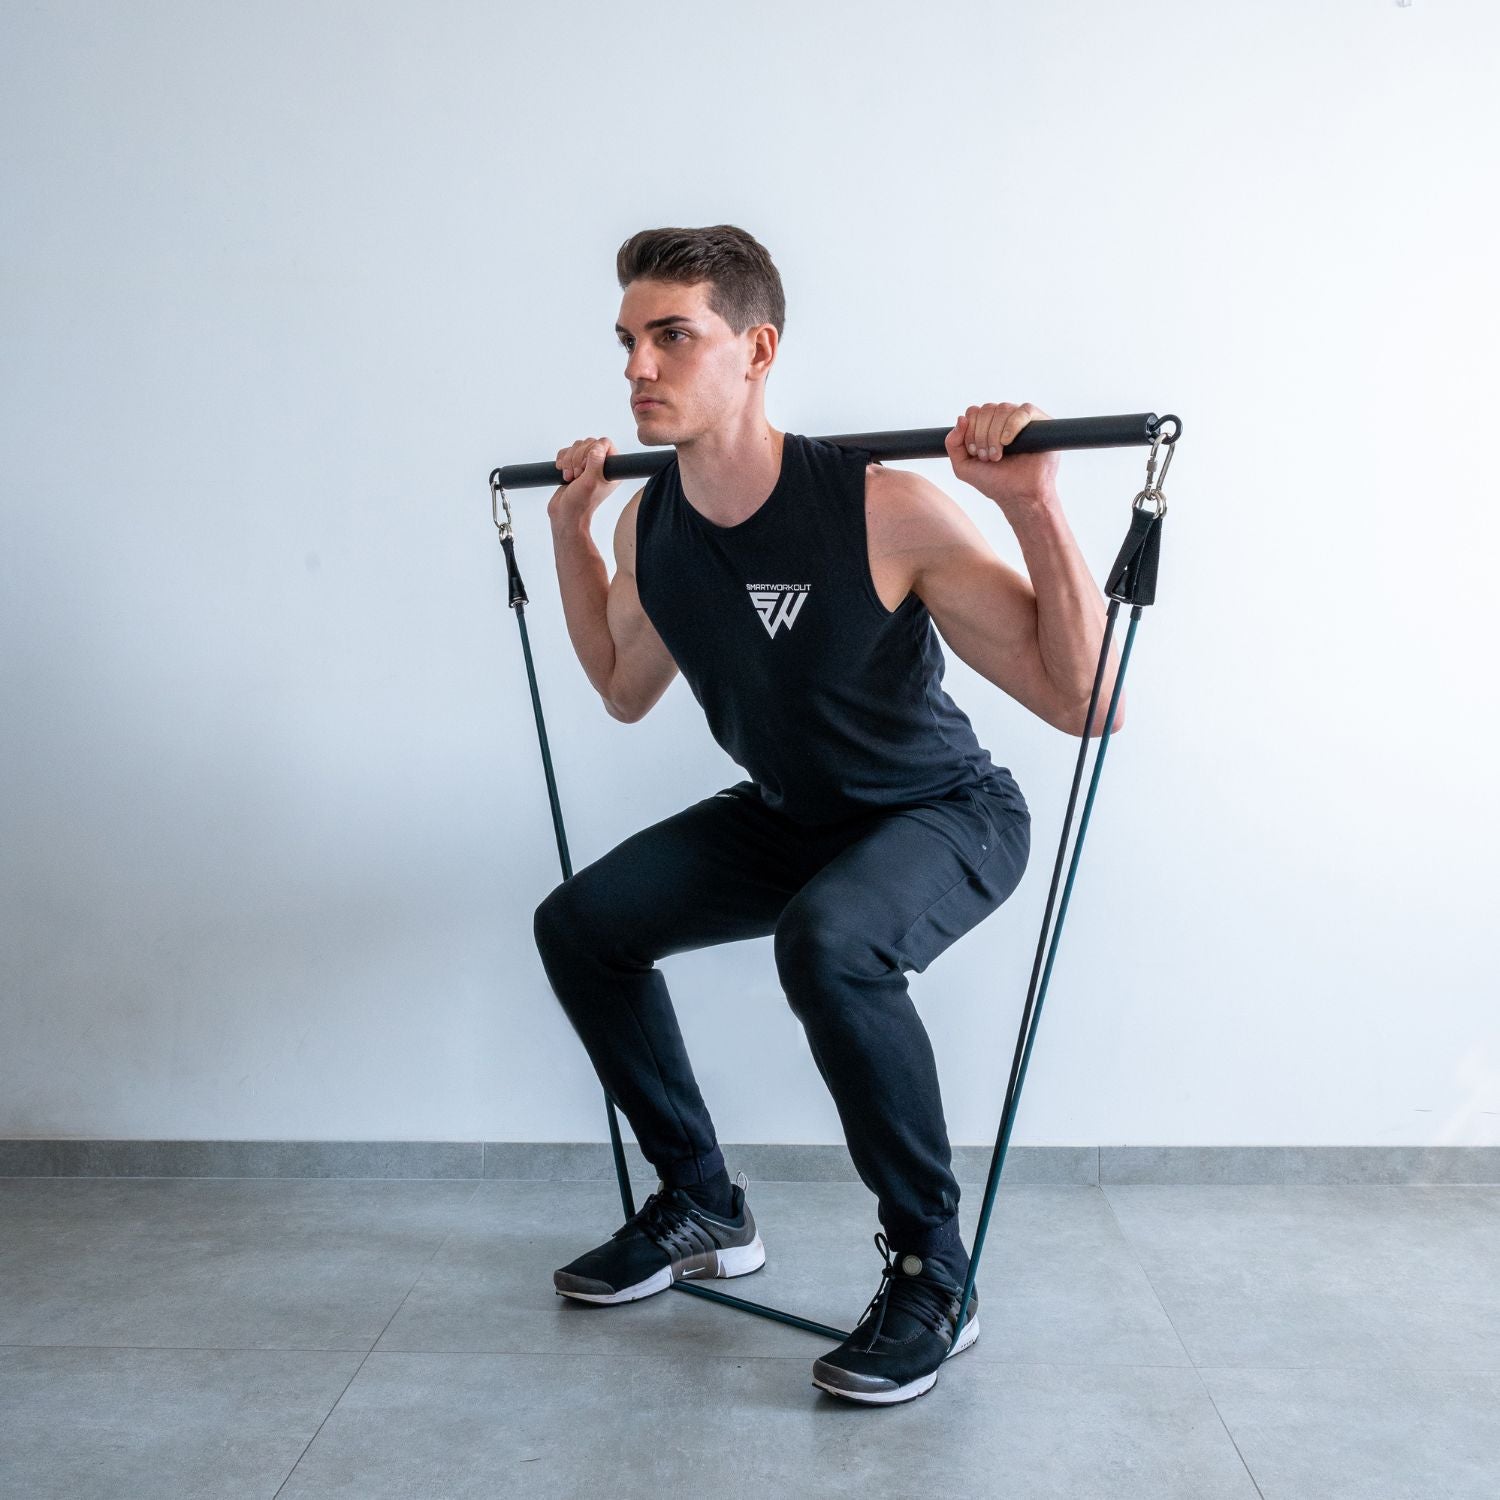 Elastique musculation,Barre de résistance élastique pour Yoga et Pilates,  équipement de Fitness, Crossfit - With 5pcs bands set